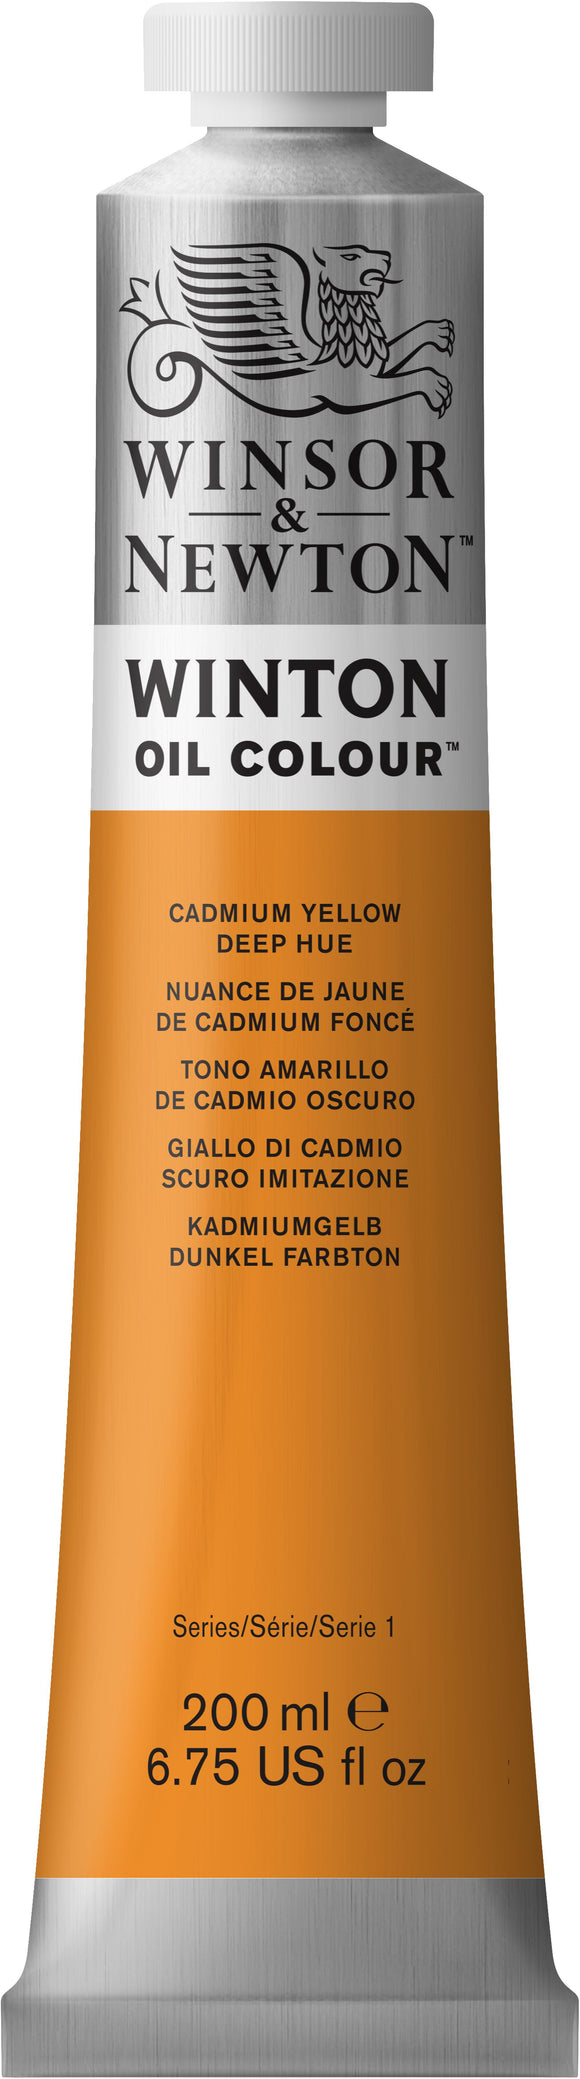 Winsor & Newton Winton Oil Colour Cadmium Yellow Deep Hue 200Ml